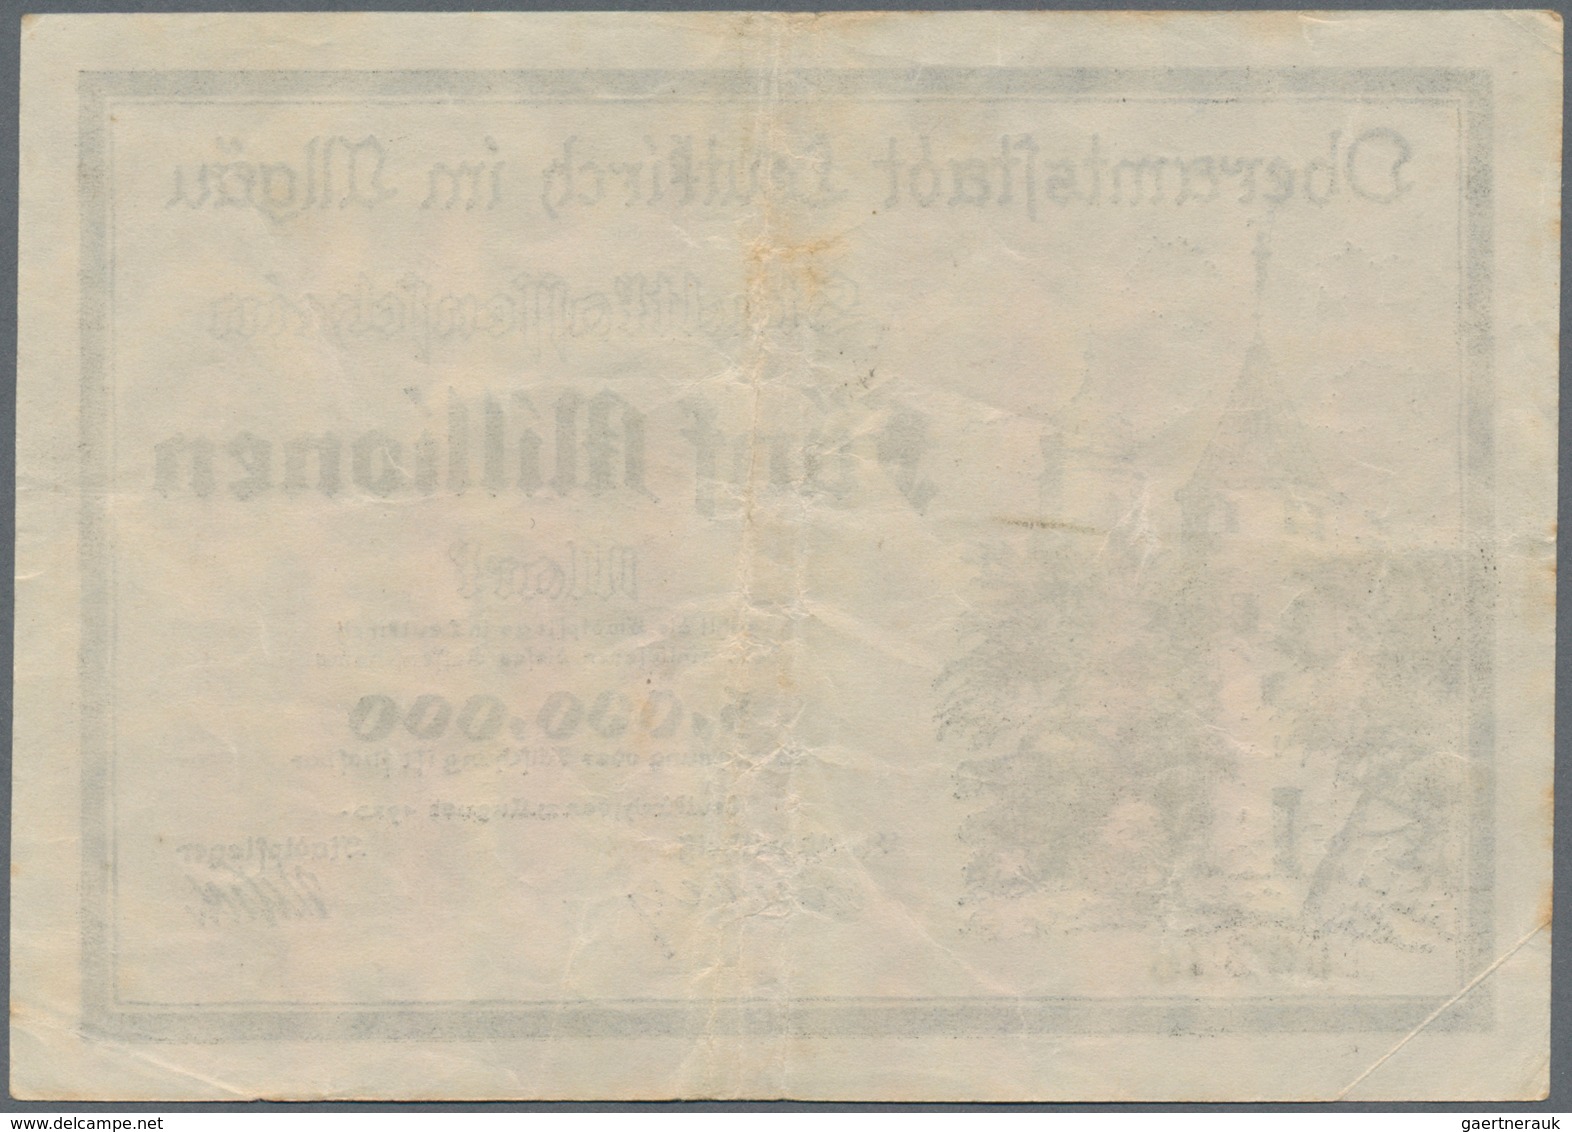 Deutschland - Notgeld - Württemberg: Leutkirch, Amtskörperschaft, 500 Tsd. (A), 1 (A Und B), 5 (A), - [11] Local Banknote Issues